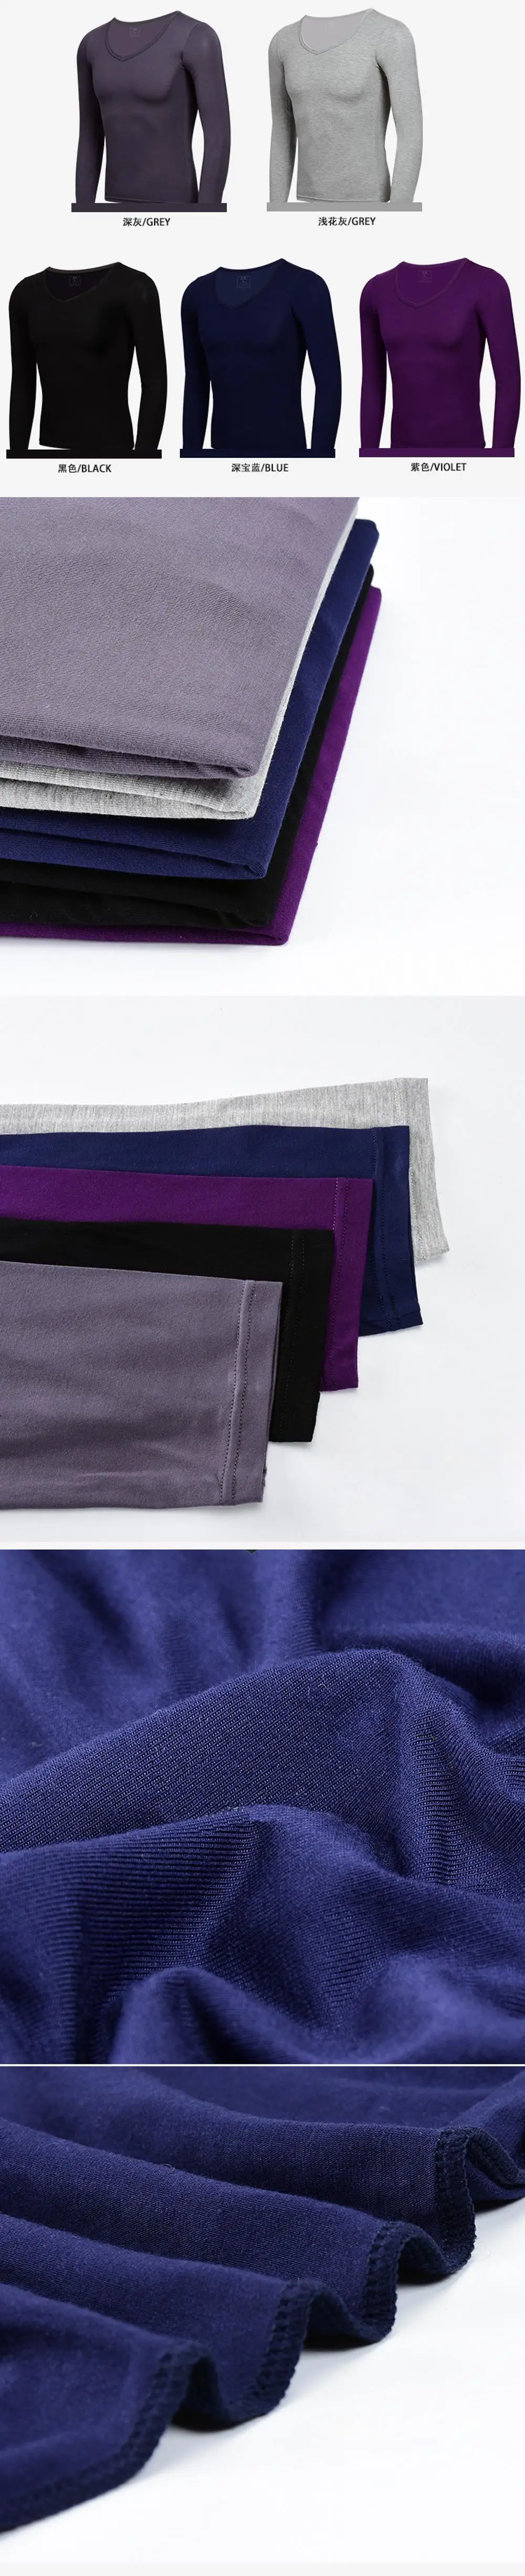 YOOY мужские кальсоны одежду для мужские теплые штаны для зимнее термобелье мужские сексуальный комплект из двух частей спортивные мужская одежда